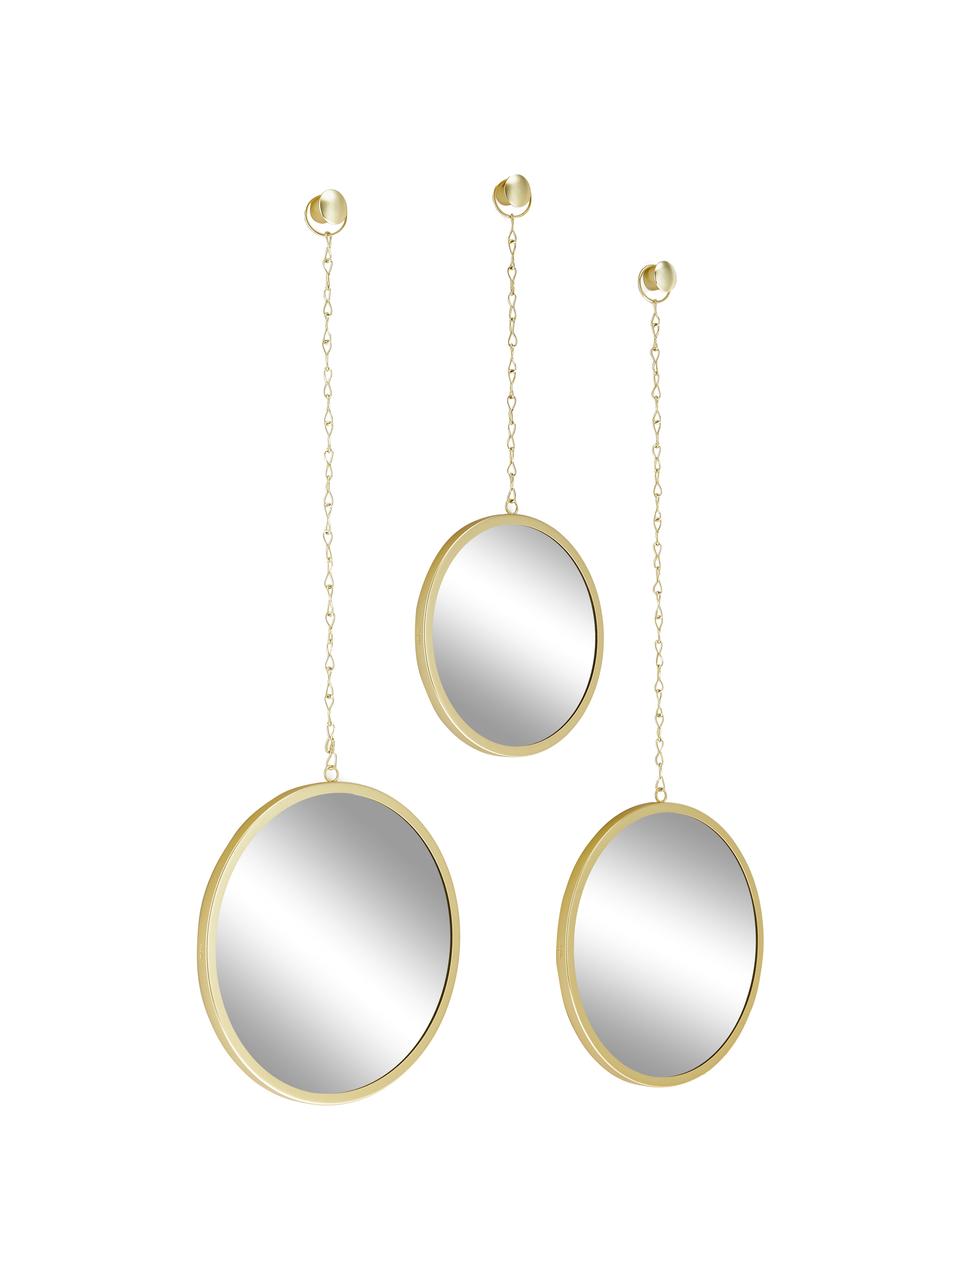 Rundes Wandspiegel-Set Dima mit goldfarbenem Metallrahmen, 3-tlg., Rahmen: Metall, beschichtet, Spiegelfläche: Spiegelglas, Goldfarben, Set mit verschiedenen Größen